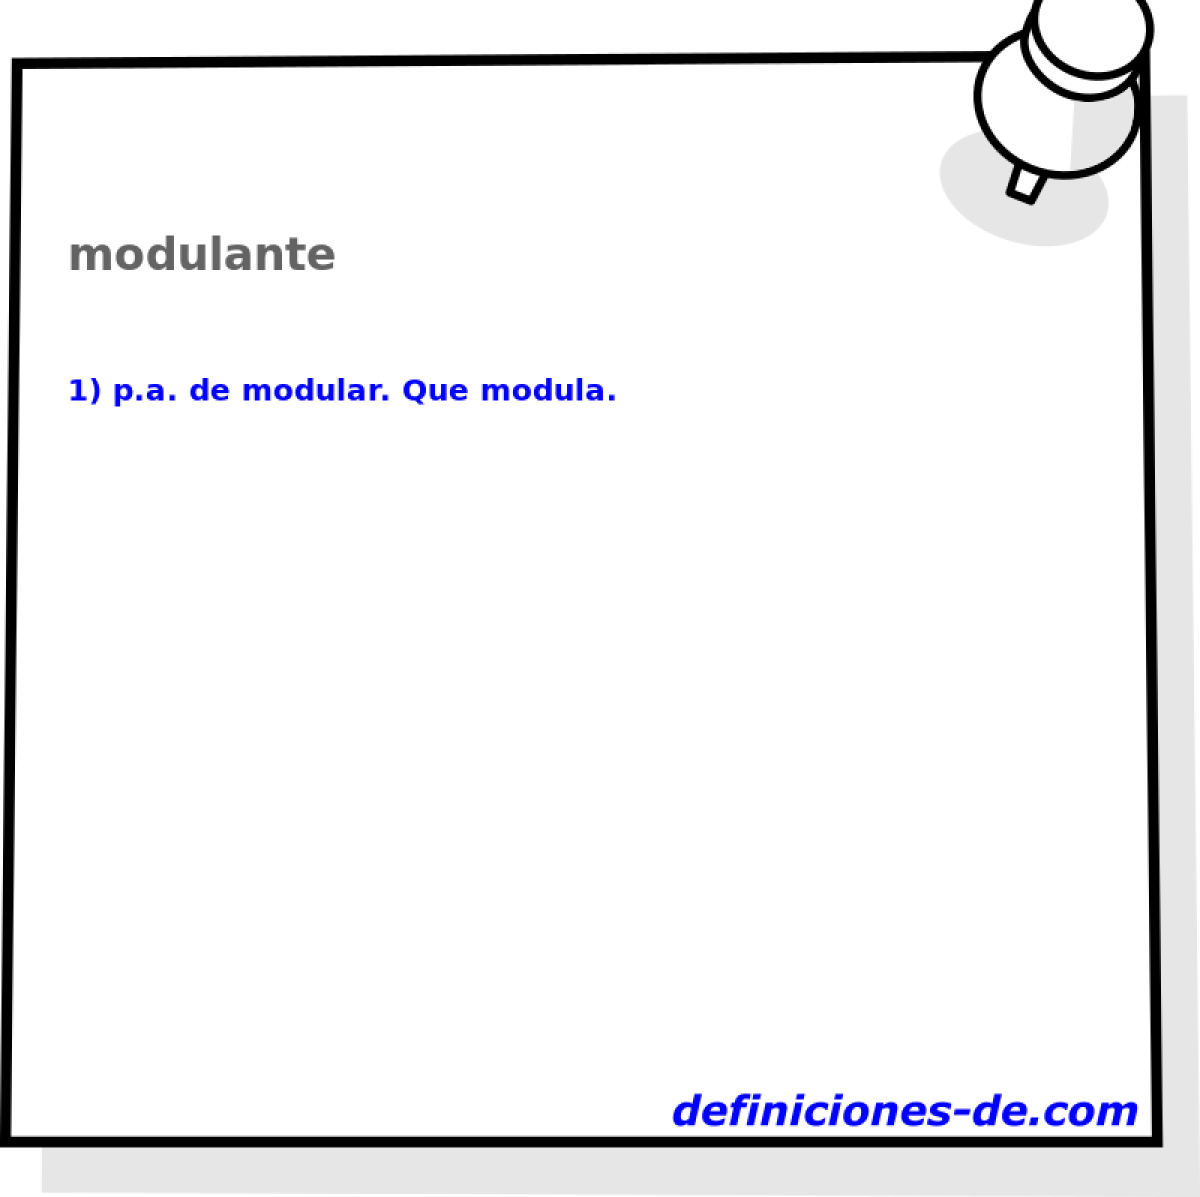 modulante 